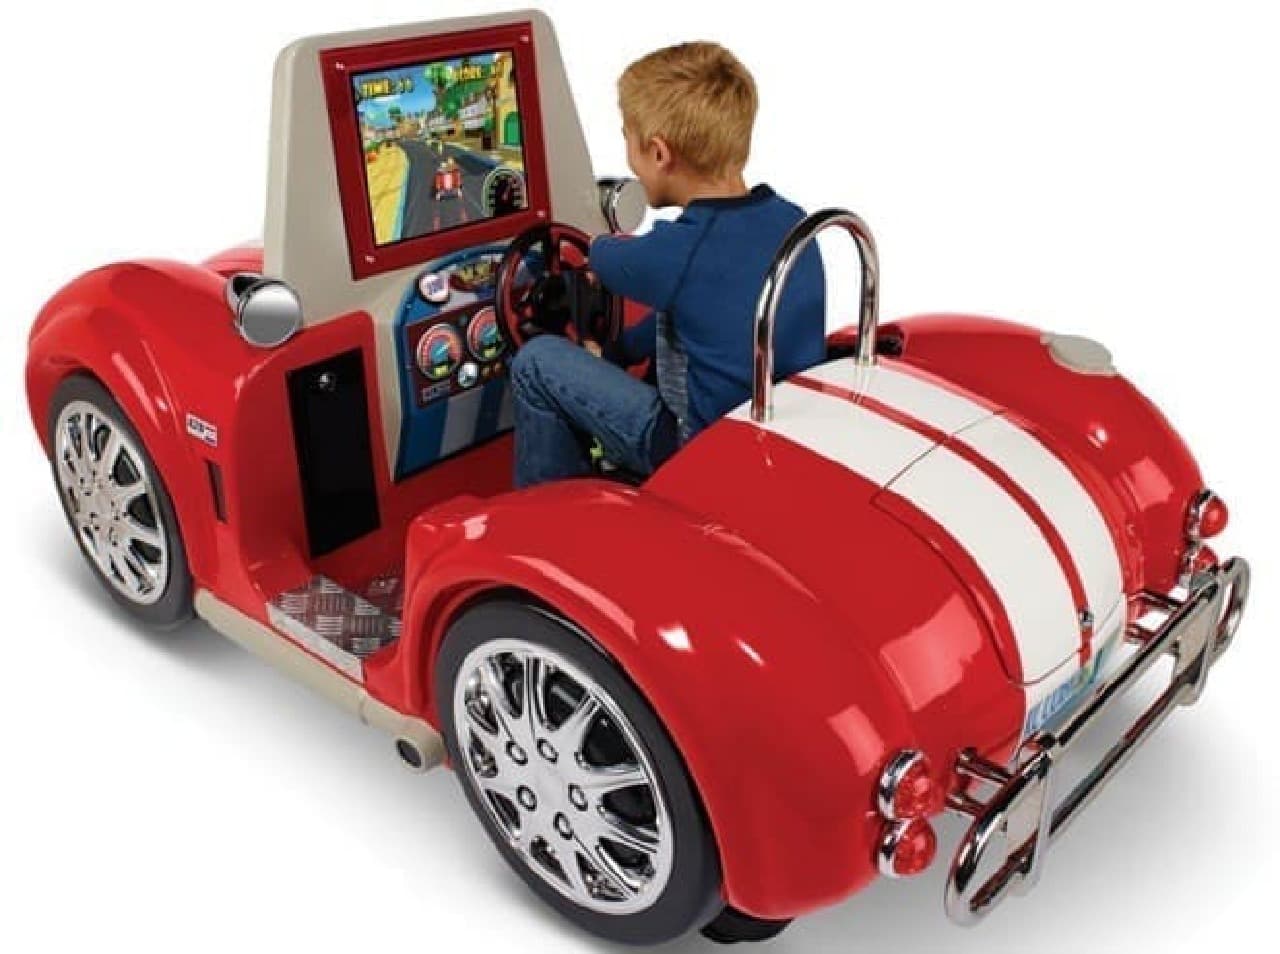 臨場感たっぷりの「The Arcade Mini Roadster Simulator」